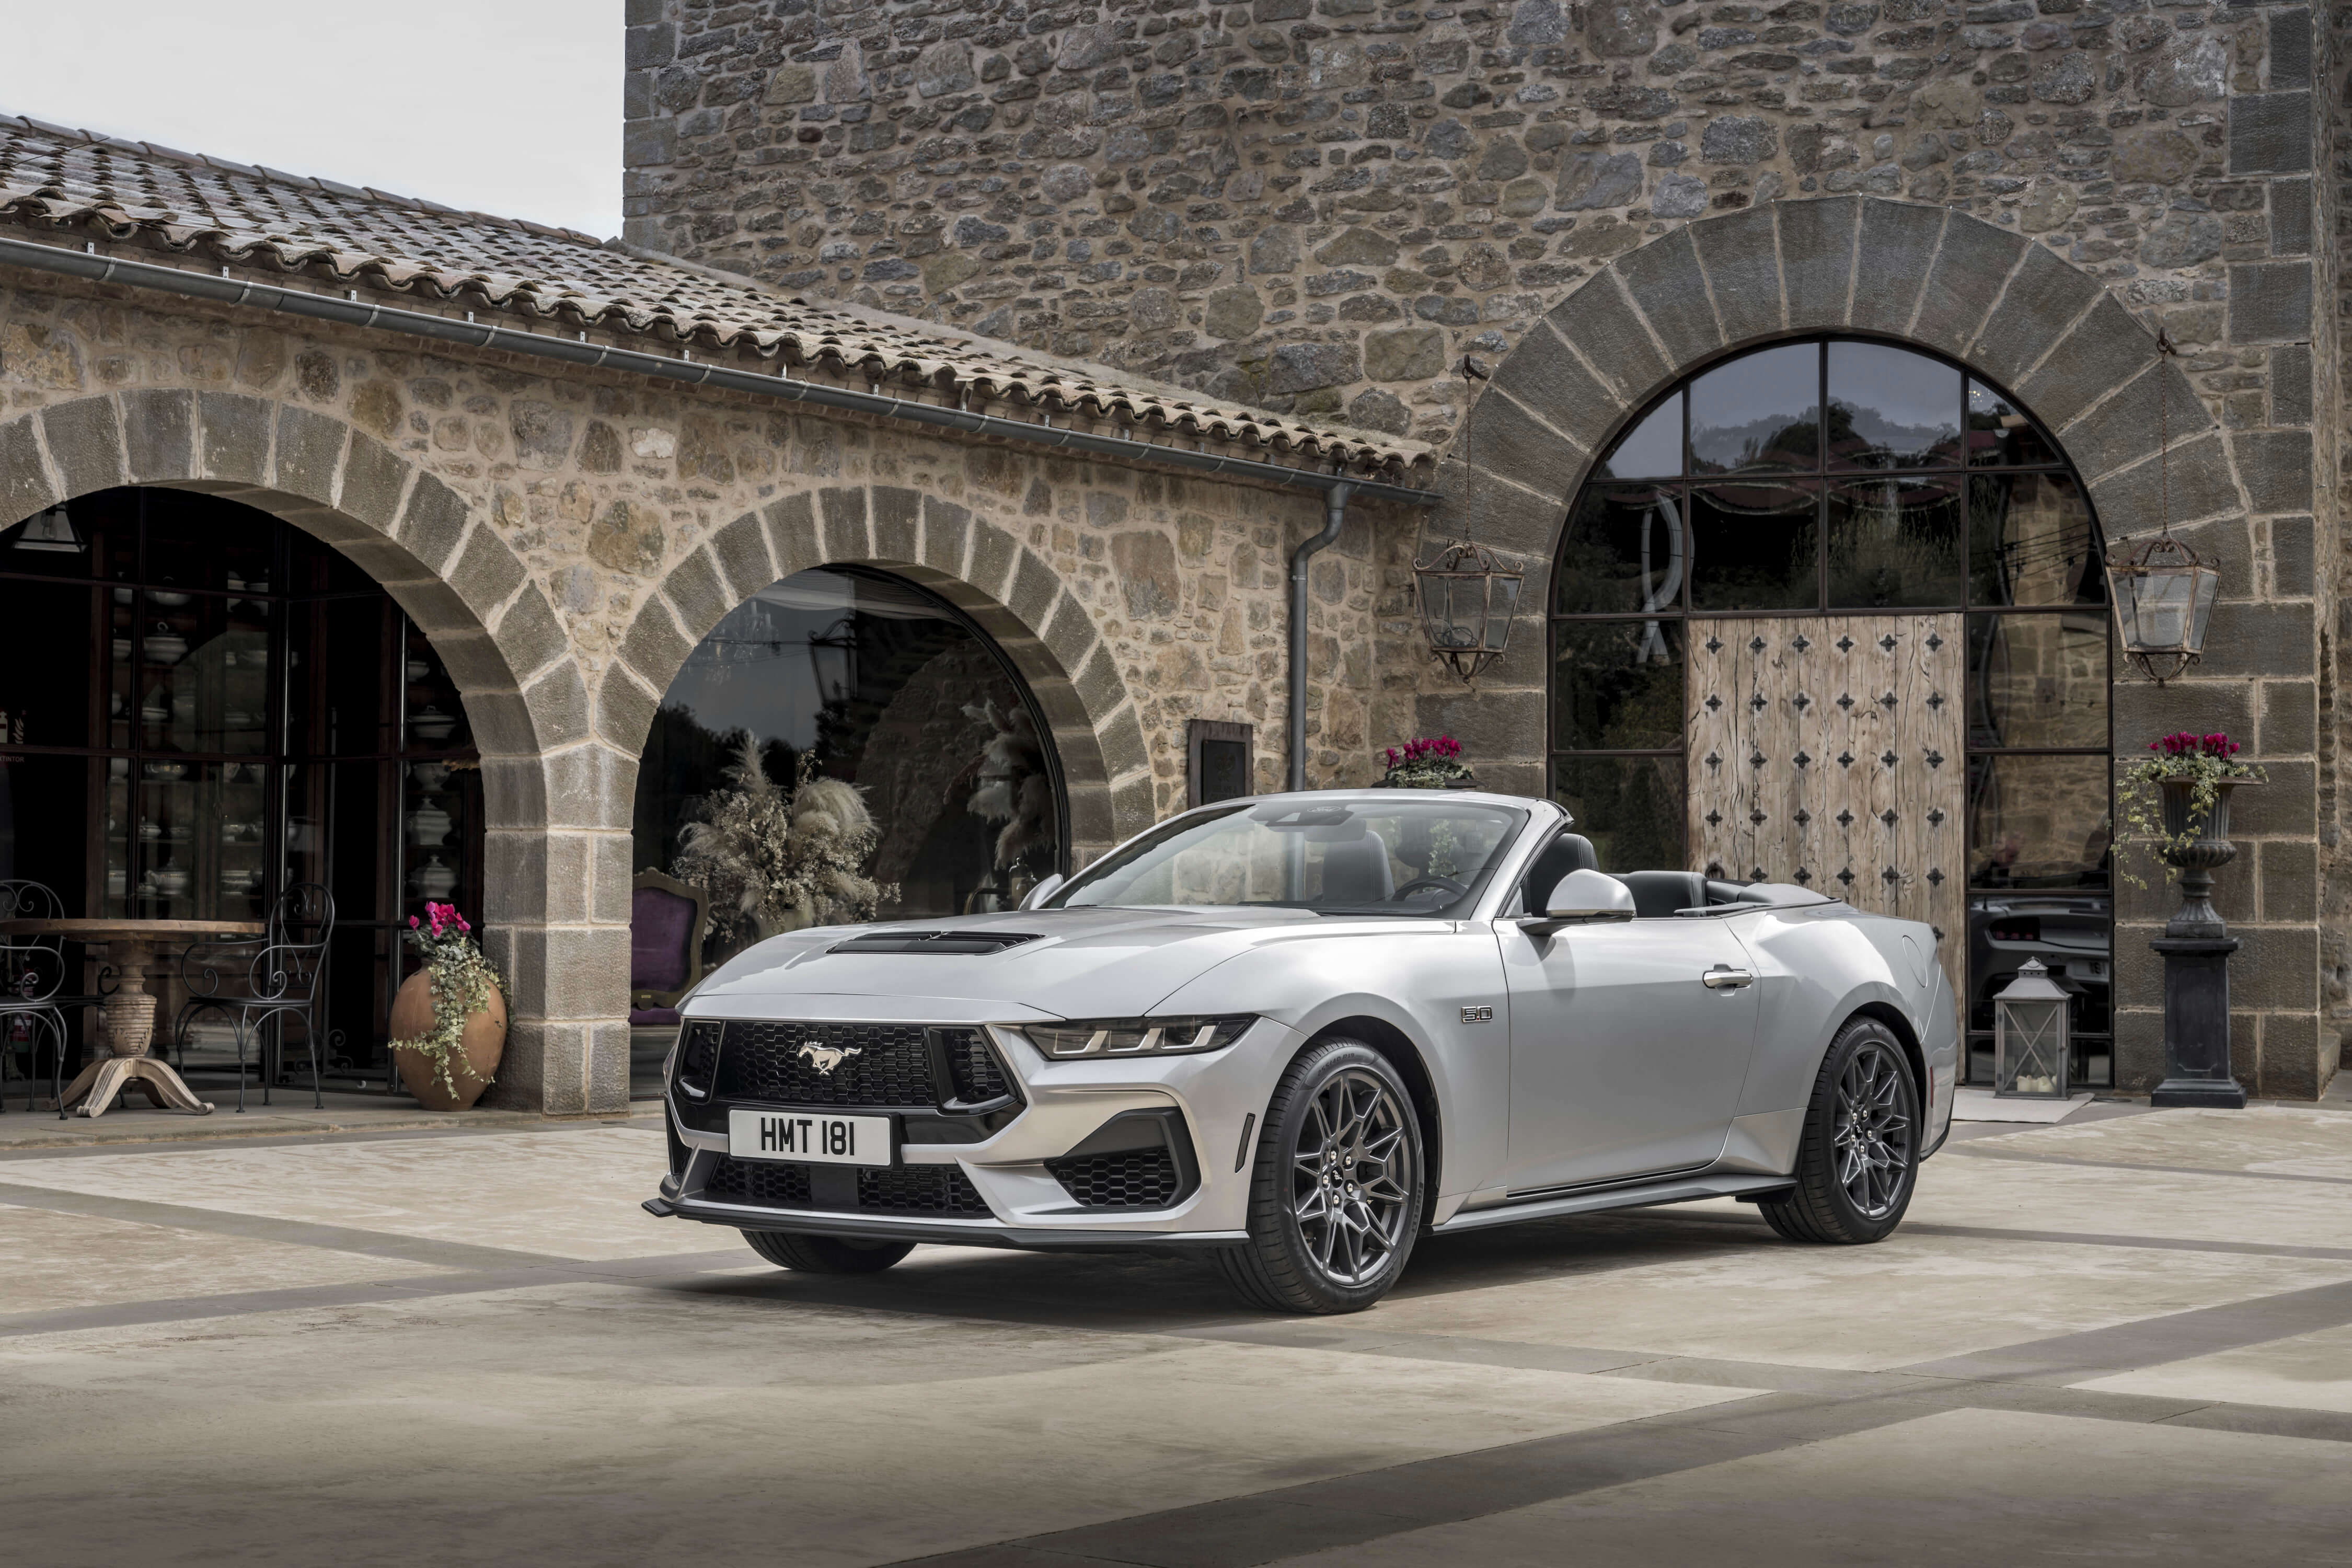 Leģendārā ikona Ford Mustang jaunā veidolā drīz ieradīsies Latvijā